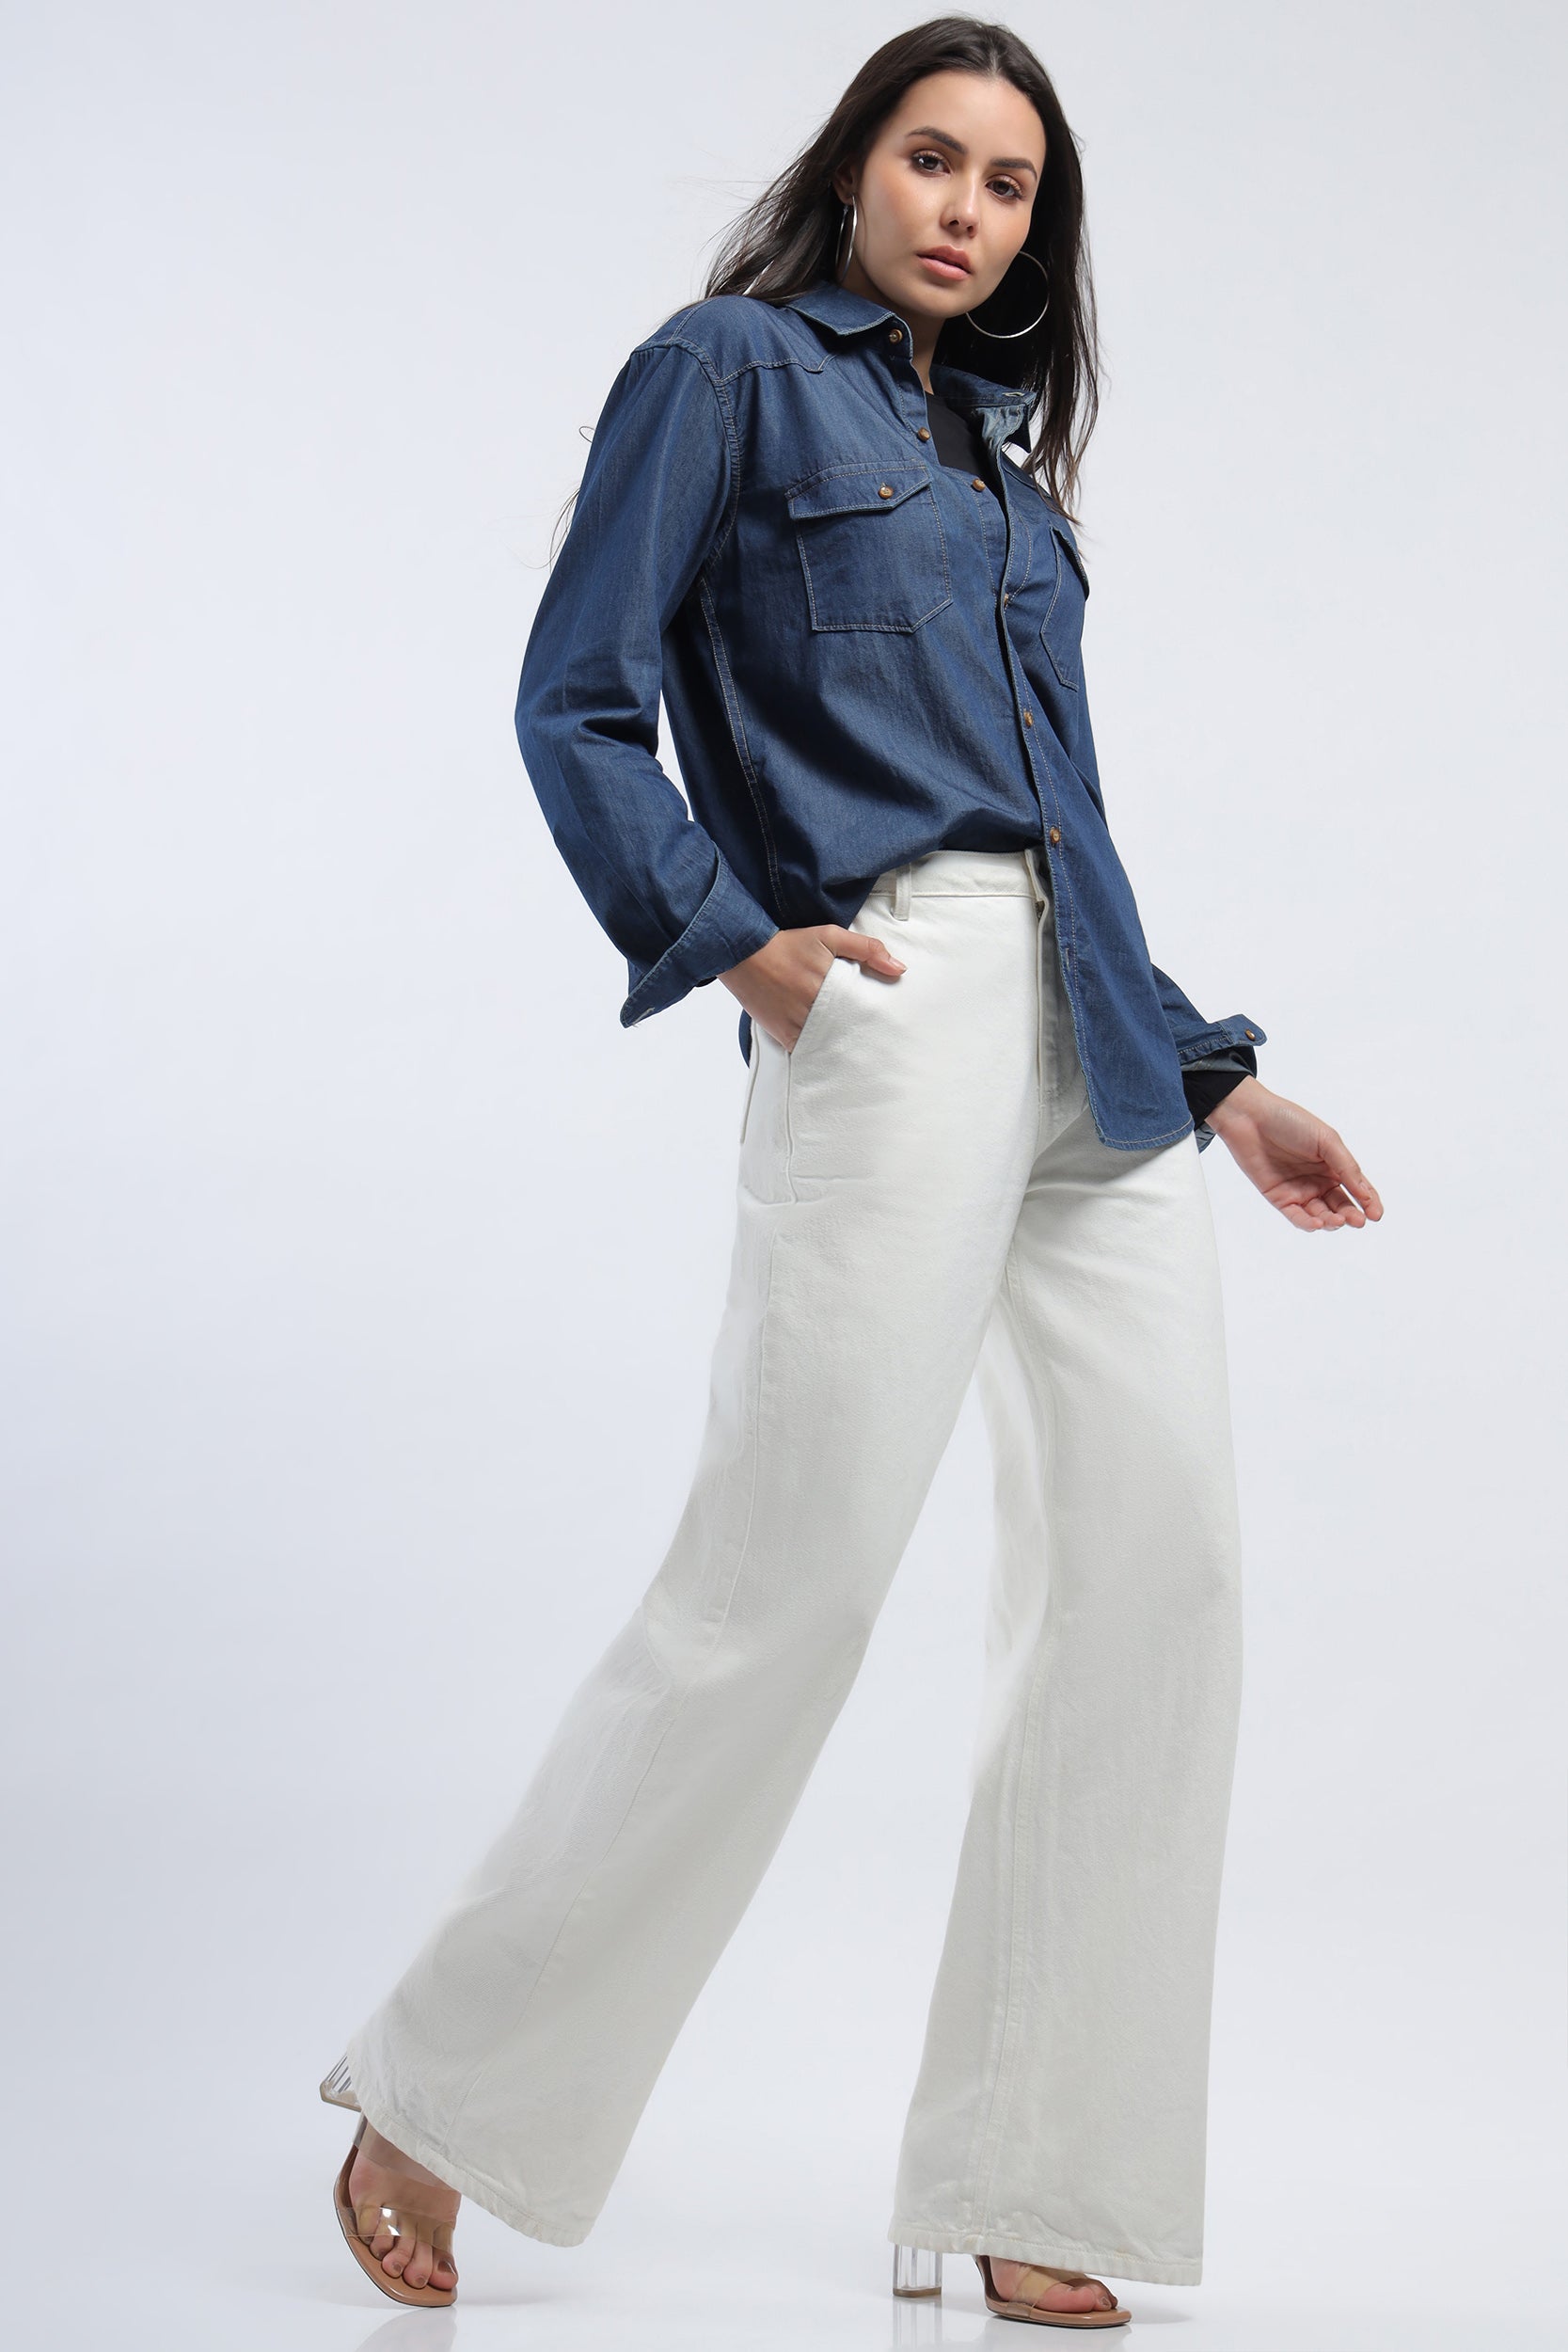 Unique Bargains Women's Plus Size Long Sleeve Button Down Denim Shirt 3X  Light Blue - Walmart.com